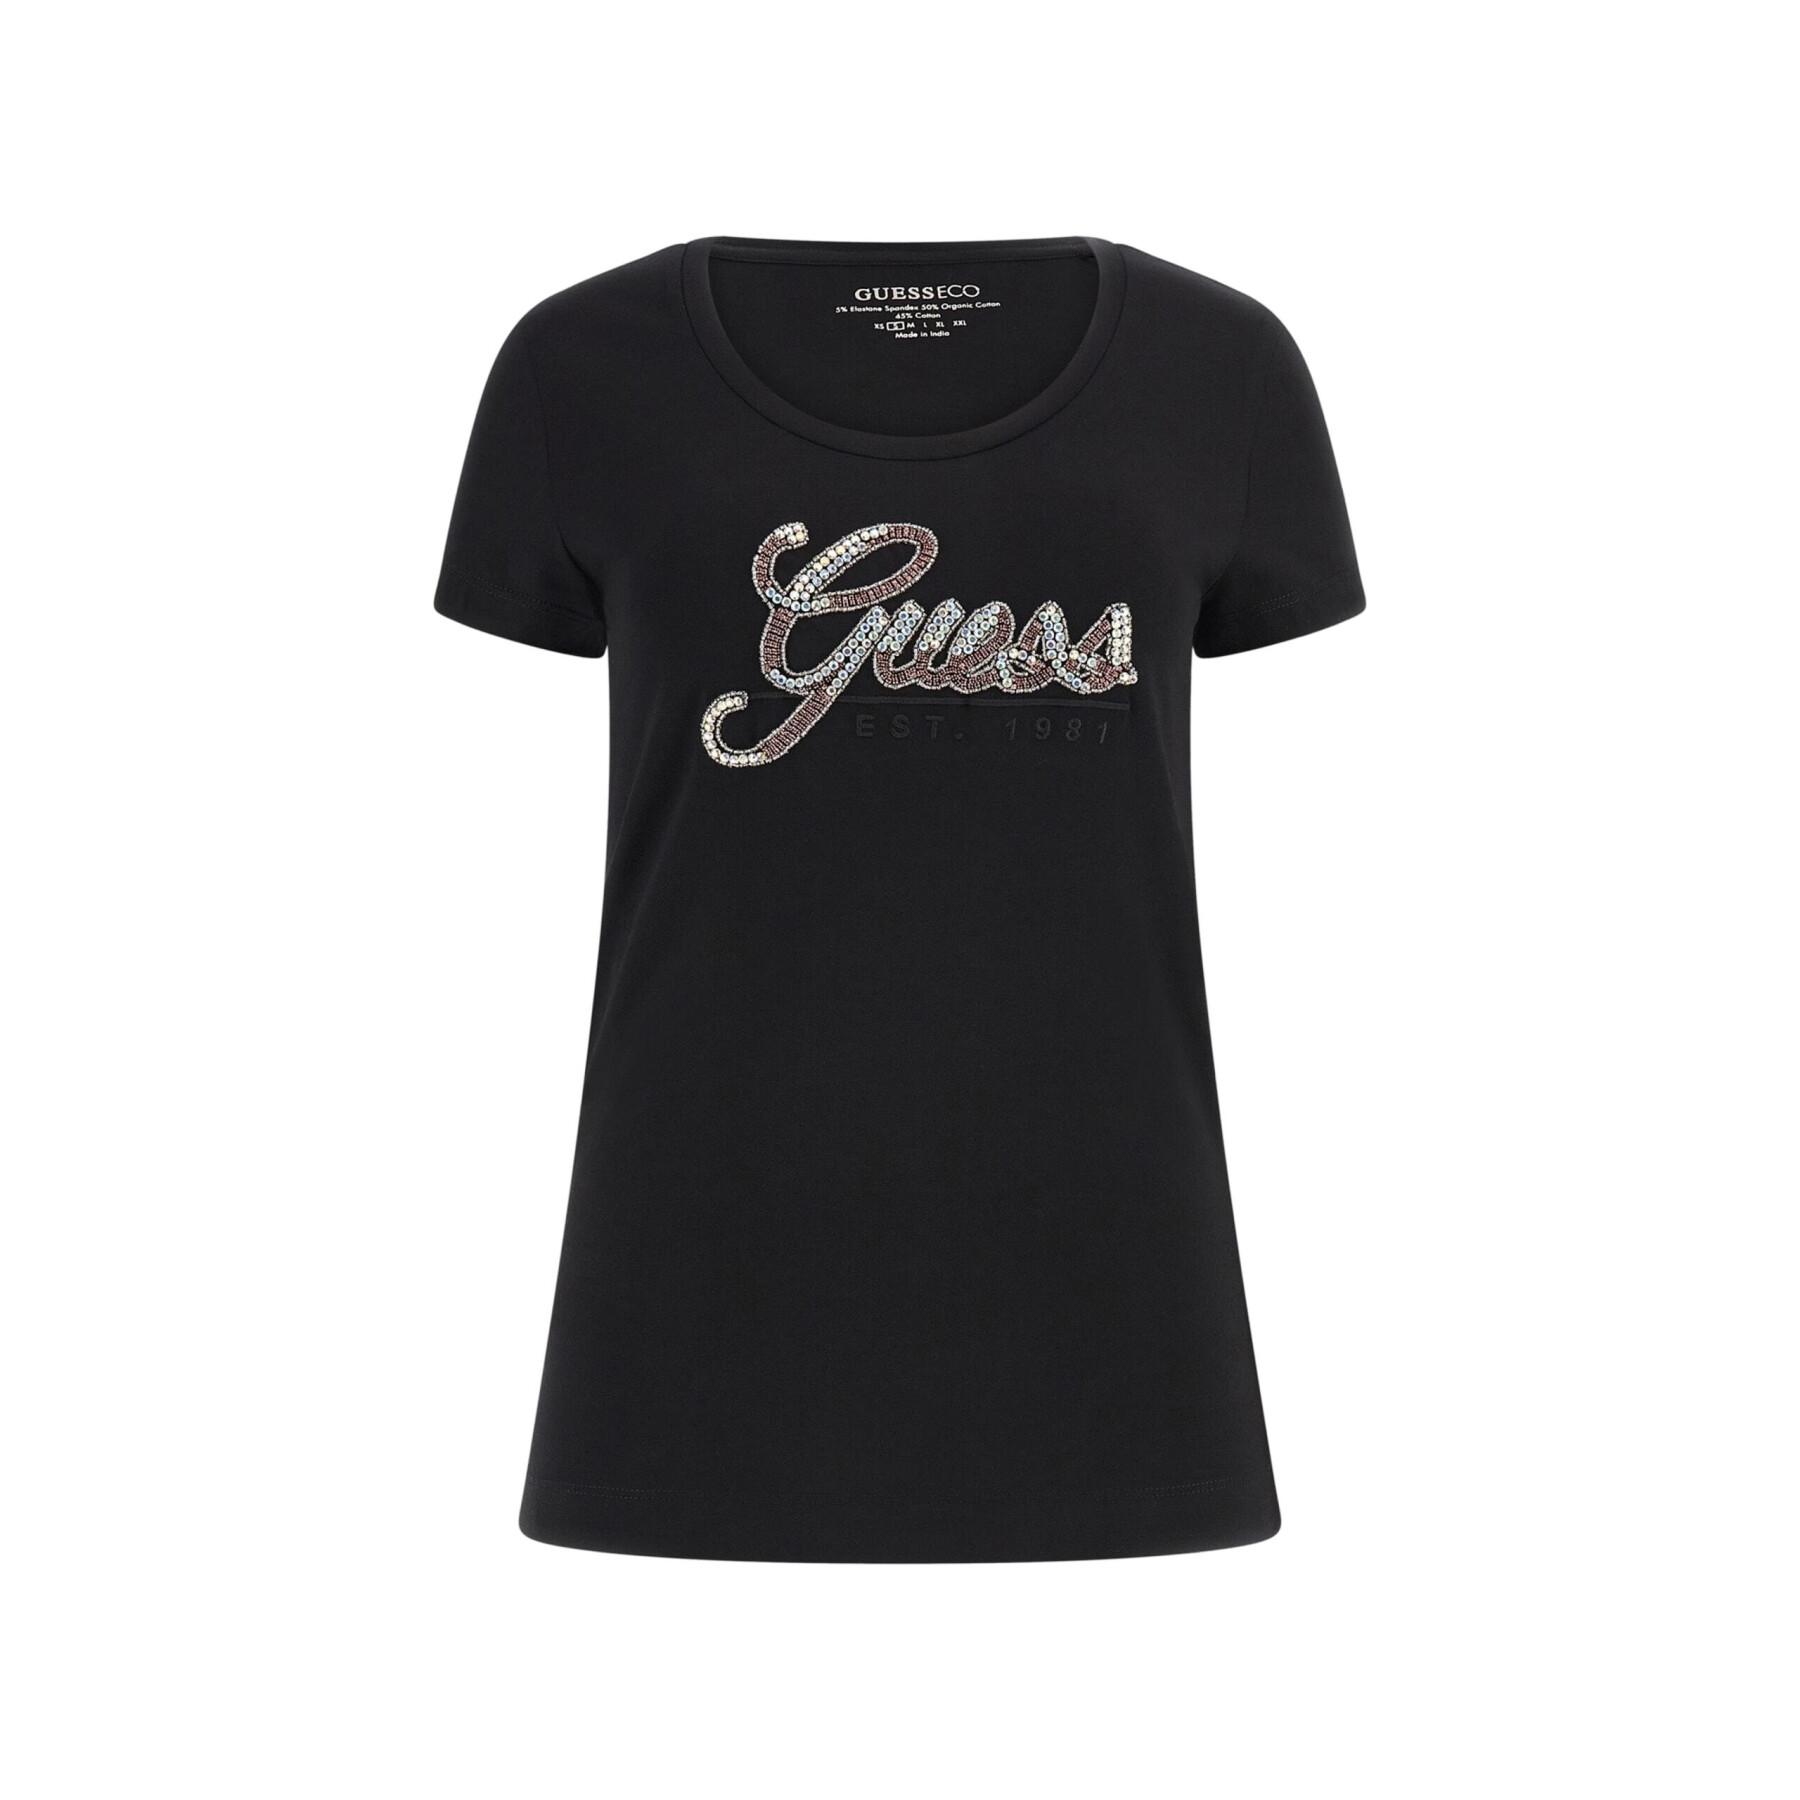 Women's T-shirt Guess Glossy - T-shirts & Tank Tops - Clothing - Women